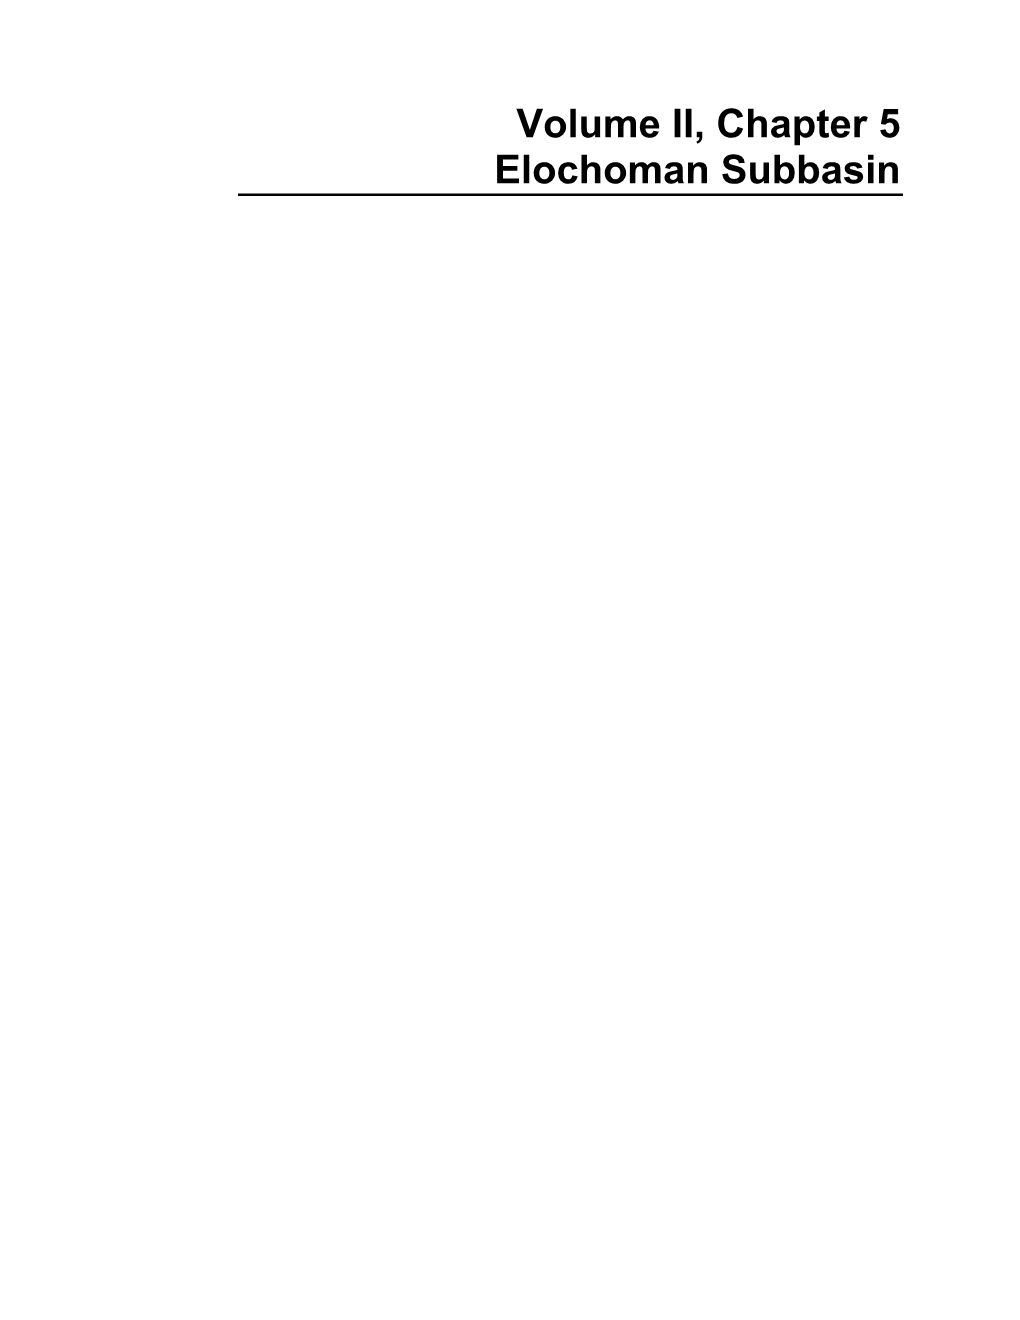 Volume II, Chapter 5 Elochoman Subbasin